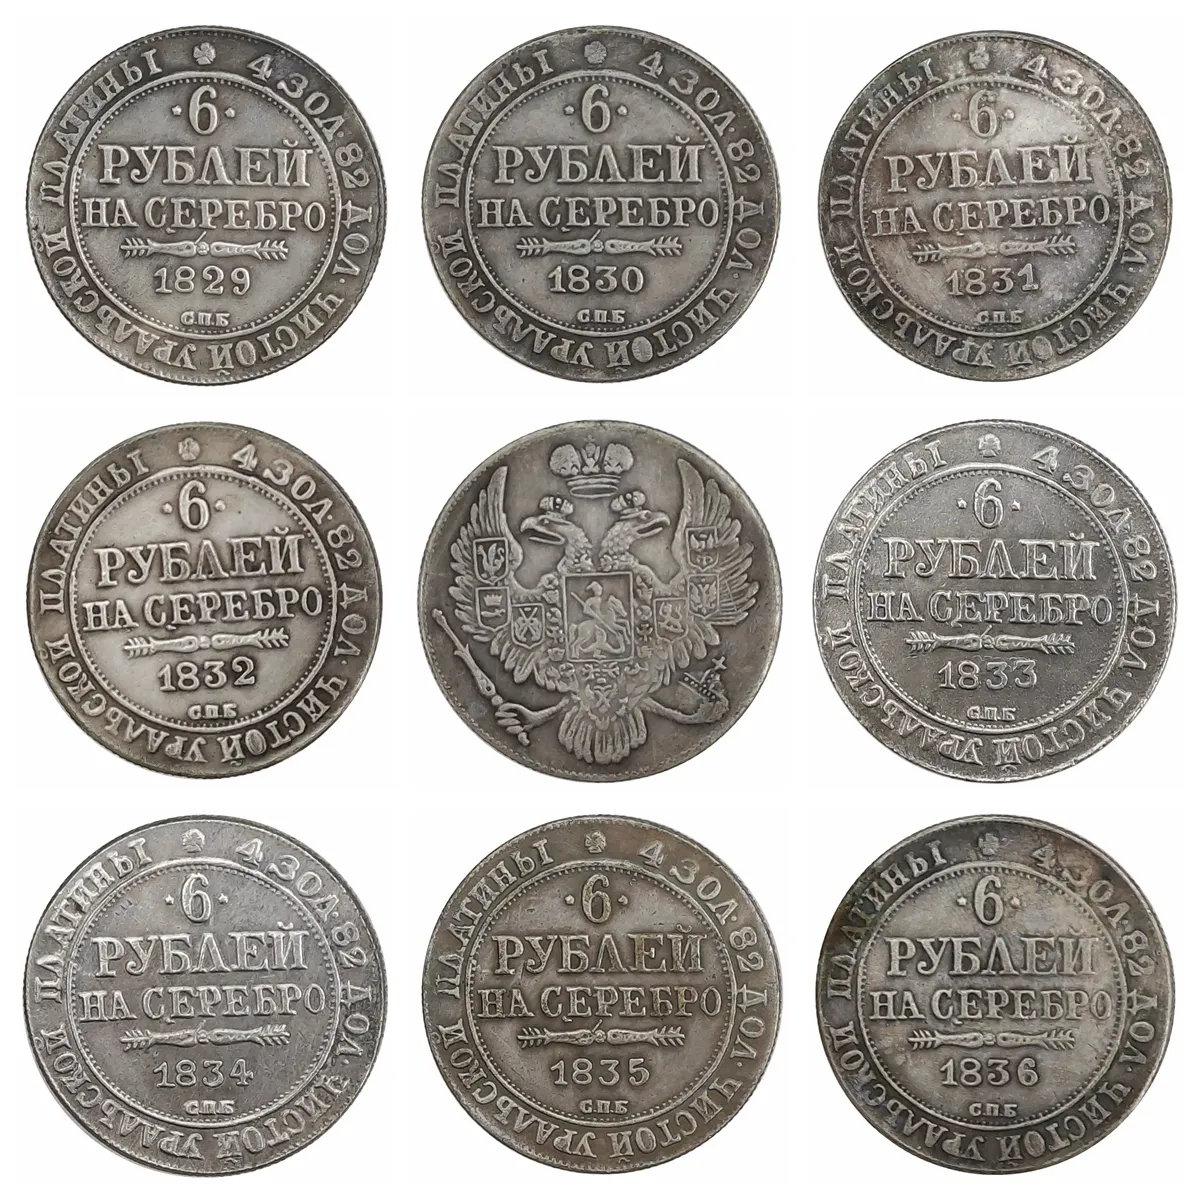 Copia de 6 monedas de platino de Rusia, 1829-1836